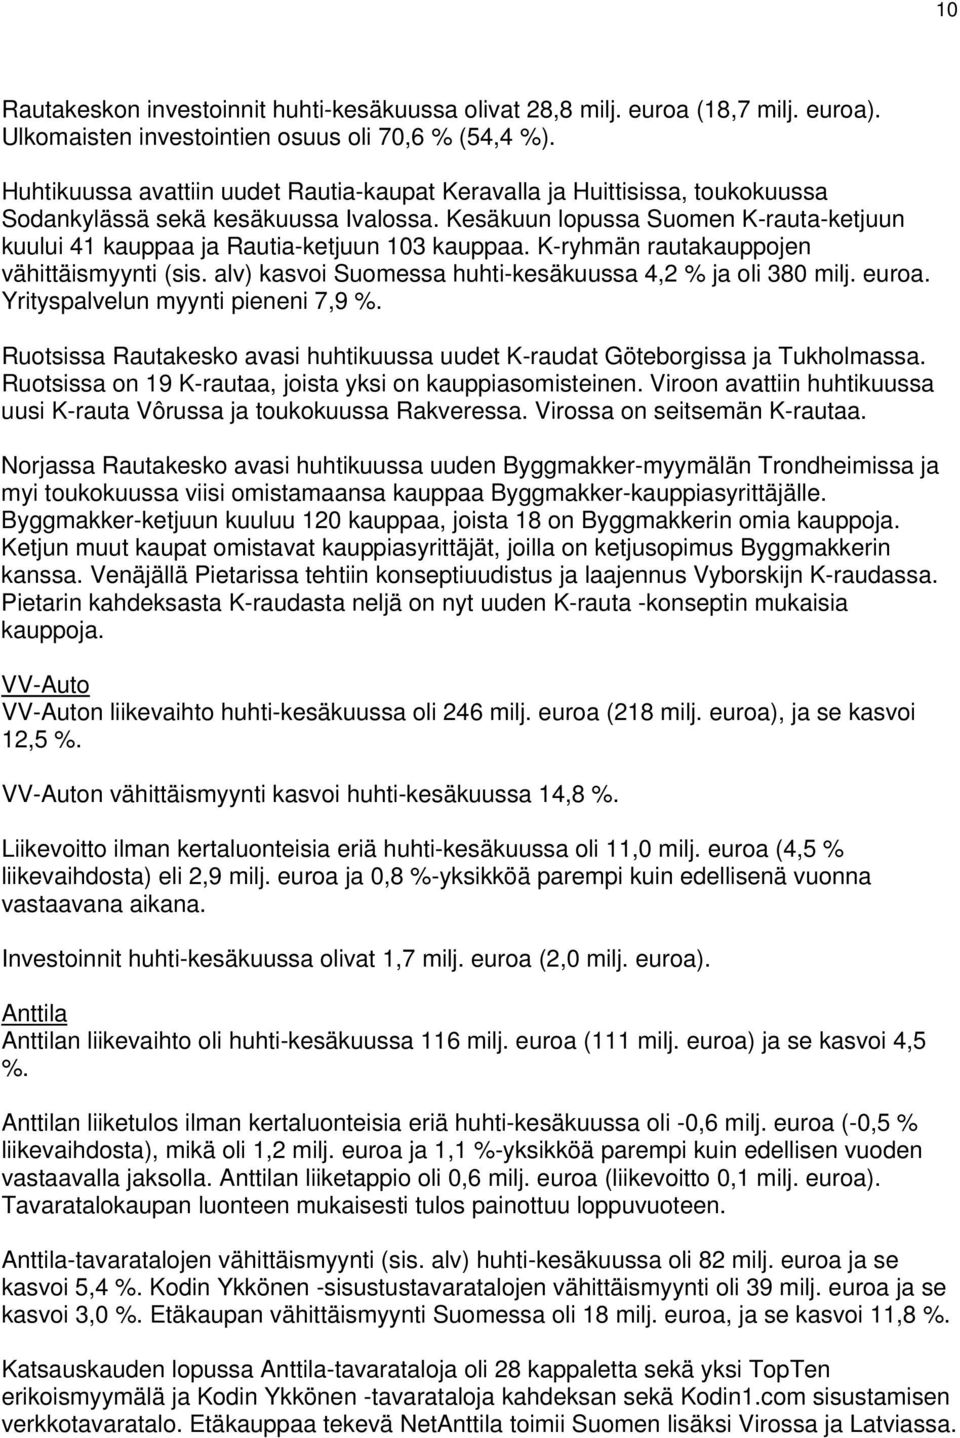 Kesäkuun lopussa Suomen K-rauta-ketjuun kuului 41 kauppaa ja Rautia-ketjuun 103 kauppaa. K-ryhmän rautakauppojen vähittäismyynti (sis. alv) kasvoi Suomessa huhti-kesäkuussa 4,2 % ja oli 380 milj.